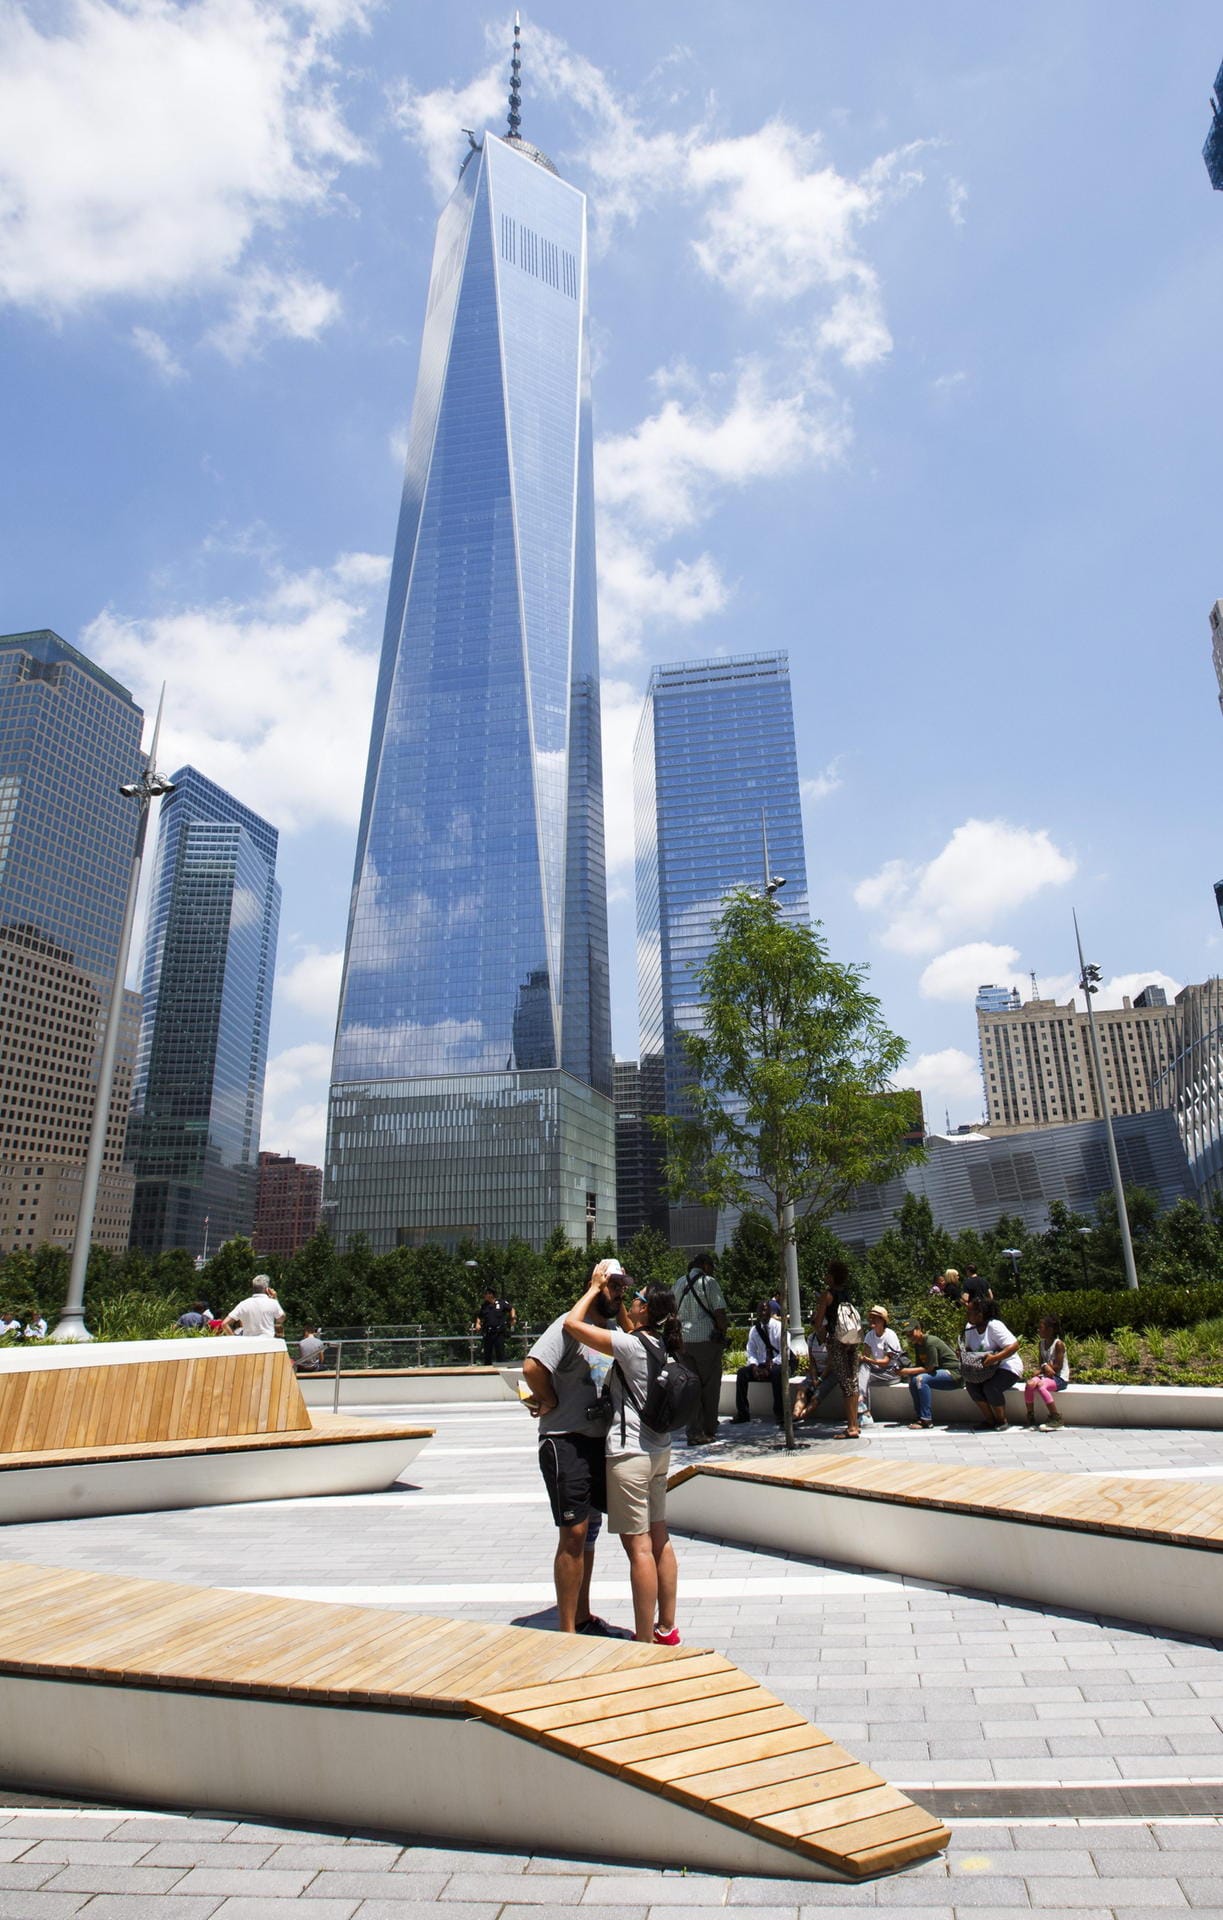 Der Liberty Park liegt direkt am World Trade Center. Entsprechend ist er von Hochhäusern eingerahmt.